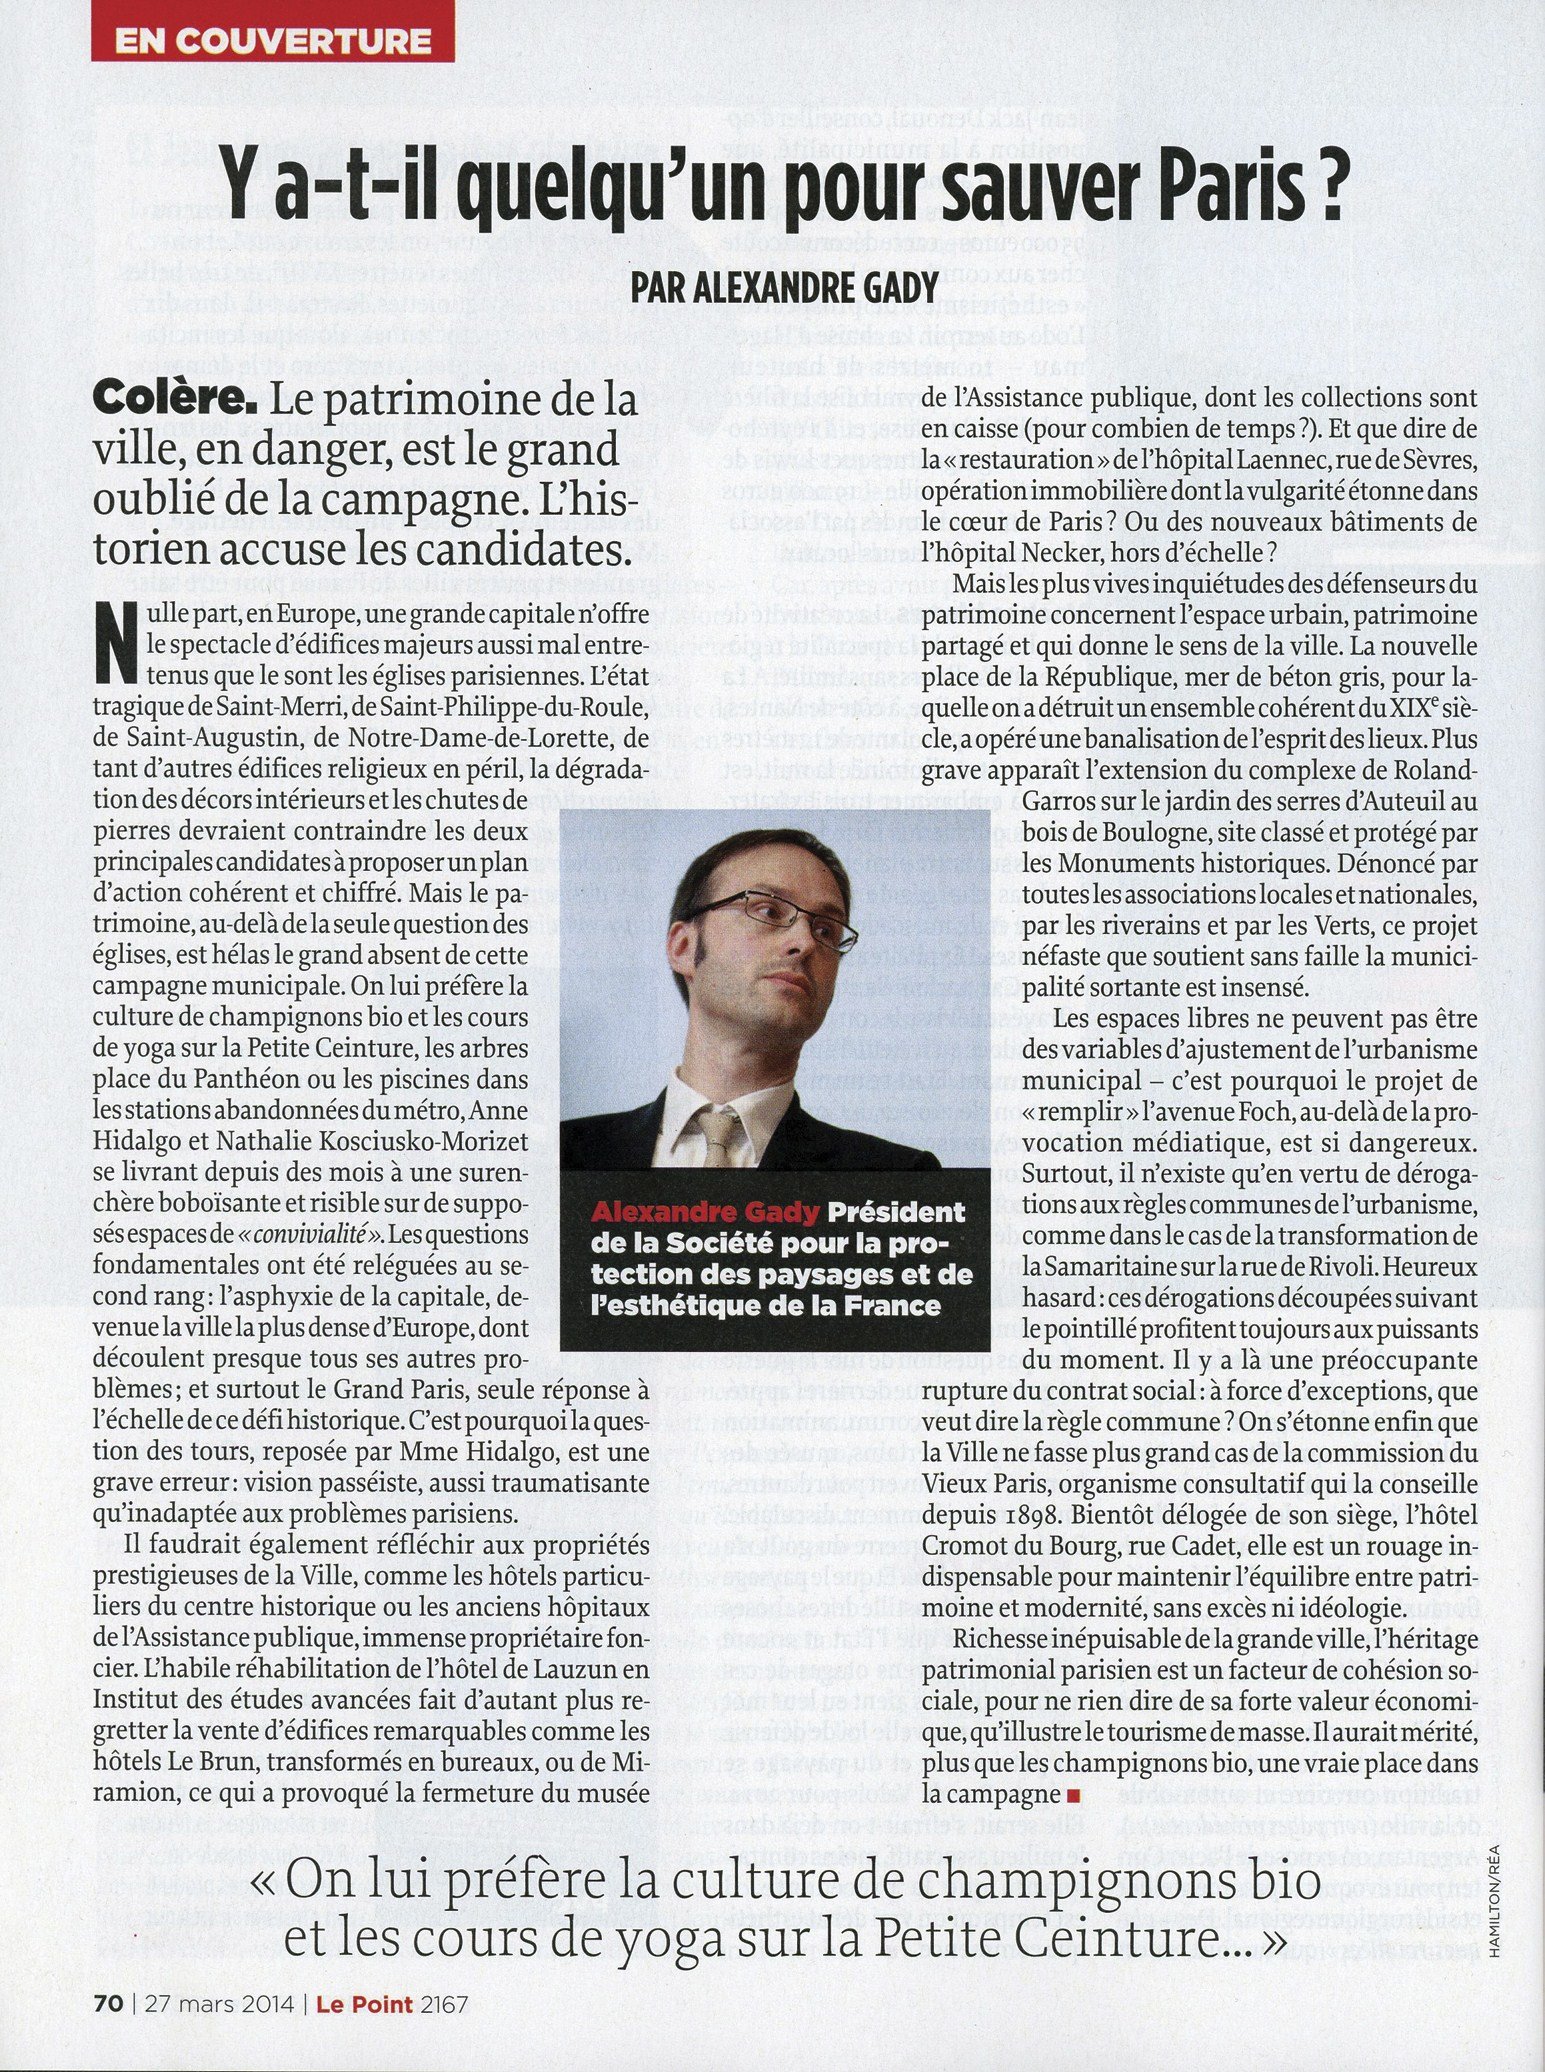 Le Point n°2167 du 27 mars 2014, p. 70